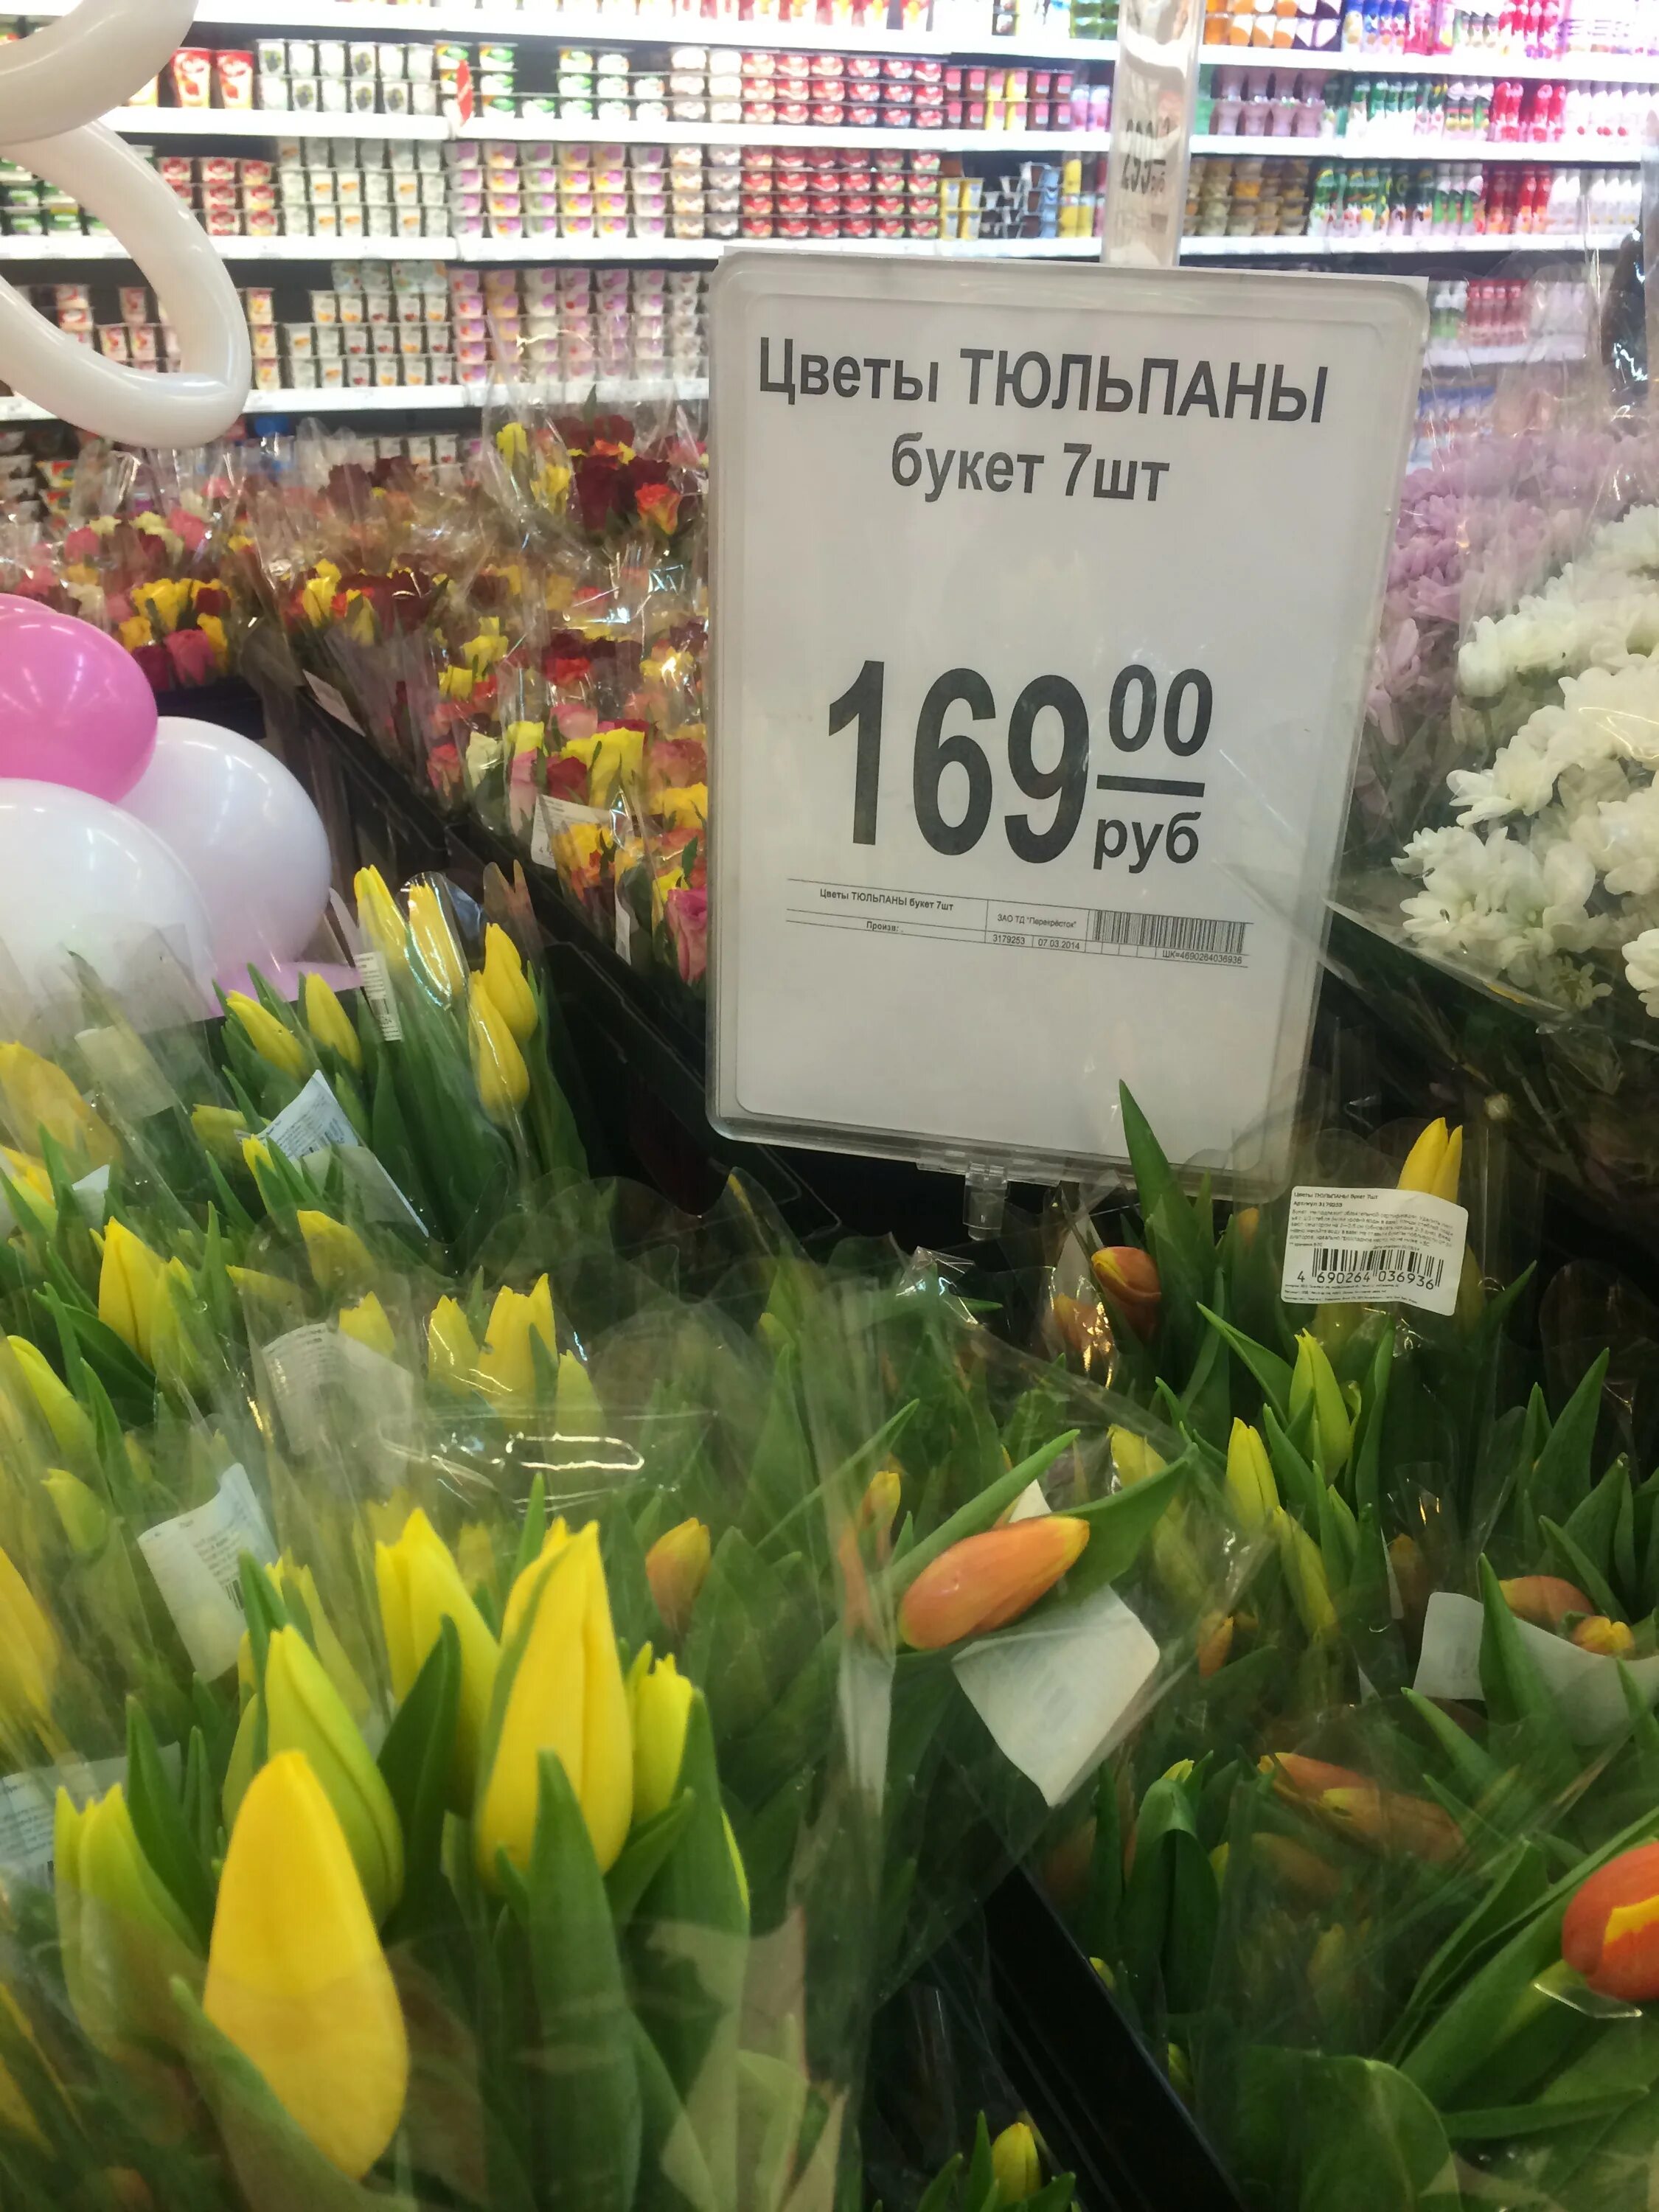 Тюльпаны в цветочном магазине. Ценники для цветочного магазина. Тюльпаны в супермаркетах. Цветы в супермаркете. Сколько по времени стоят тюльпаны в воде